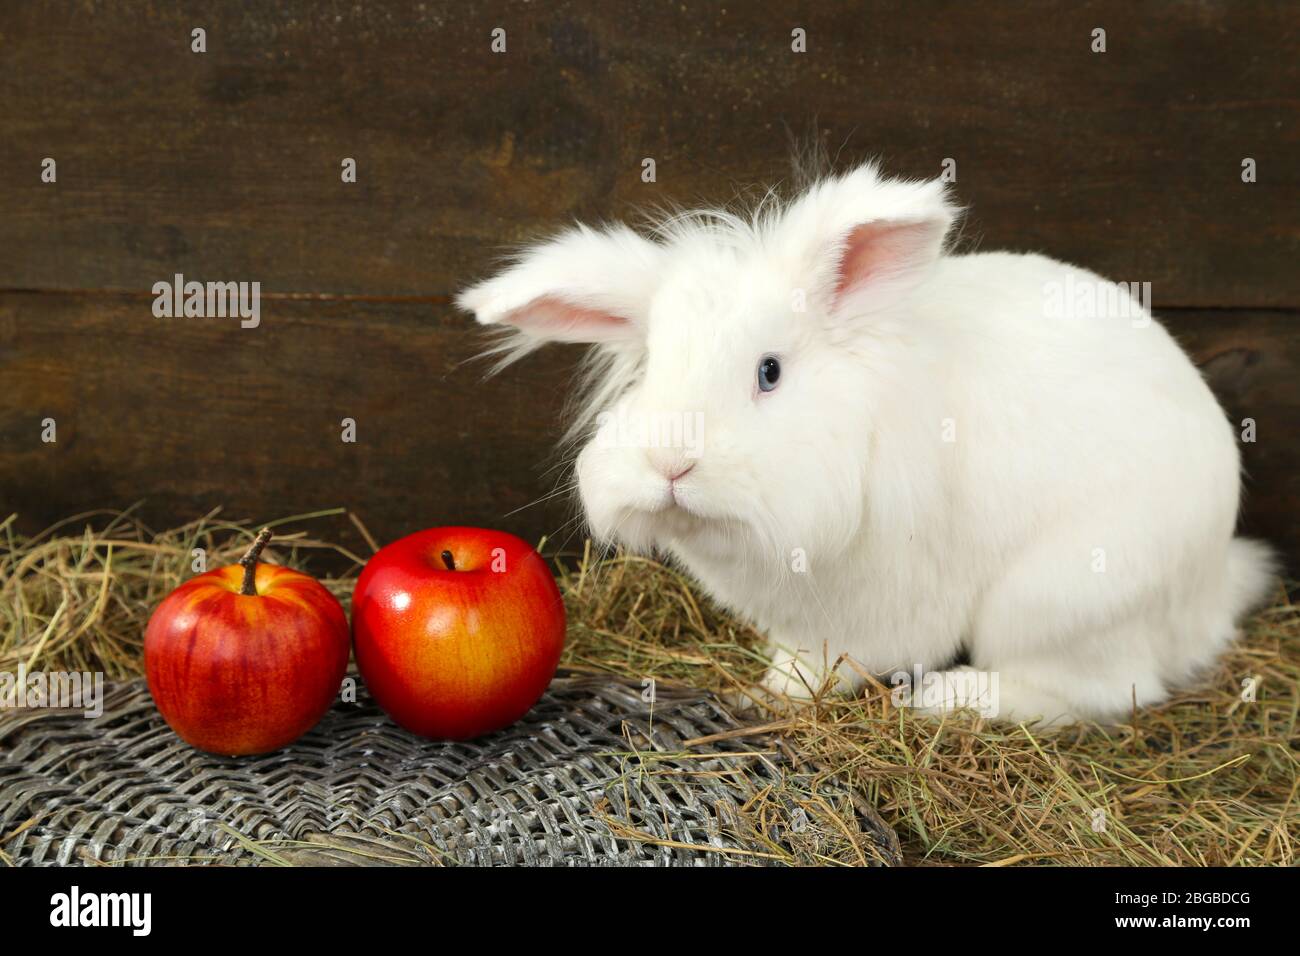 Яблоки кроликам можно давать. Кролик с яблоками. Кролик ест яблоко. Яблочки в виде кроликов. Декоративный кролик ест яблоко.